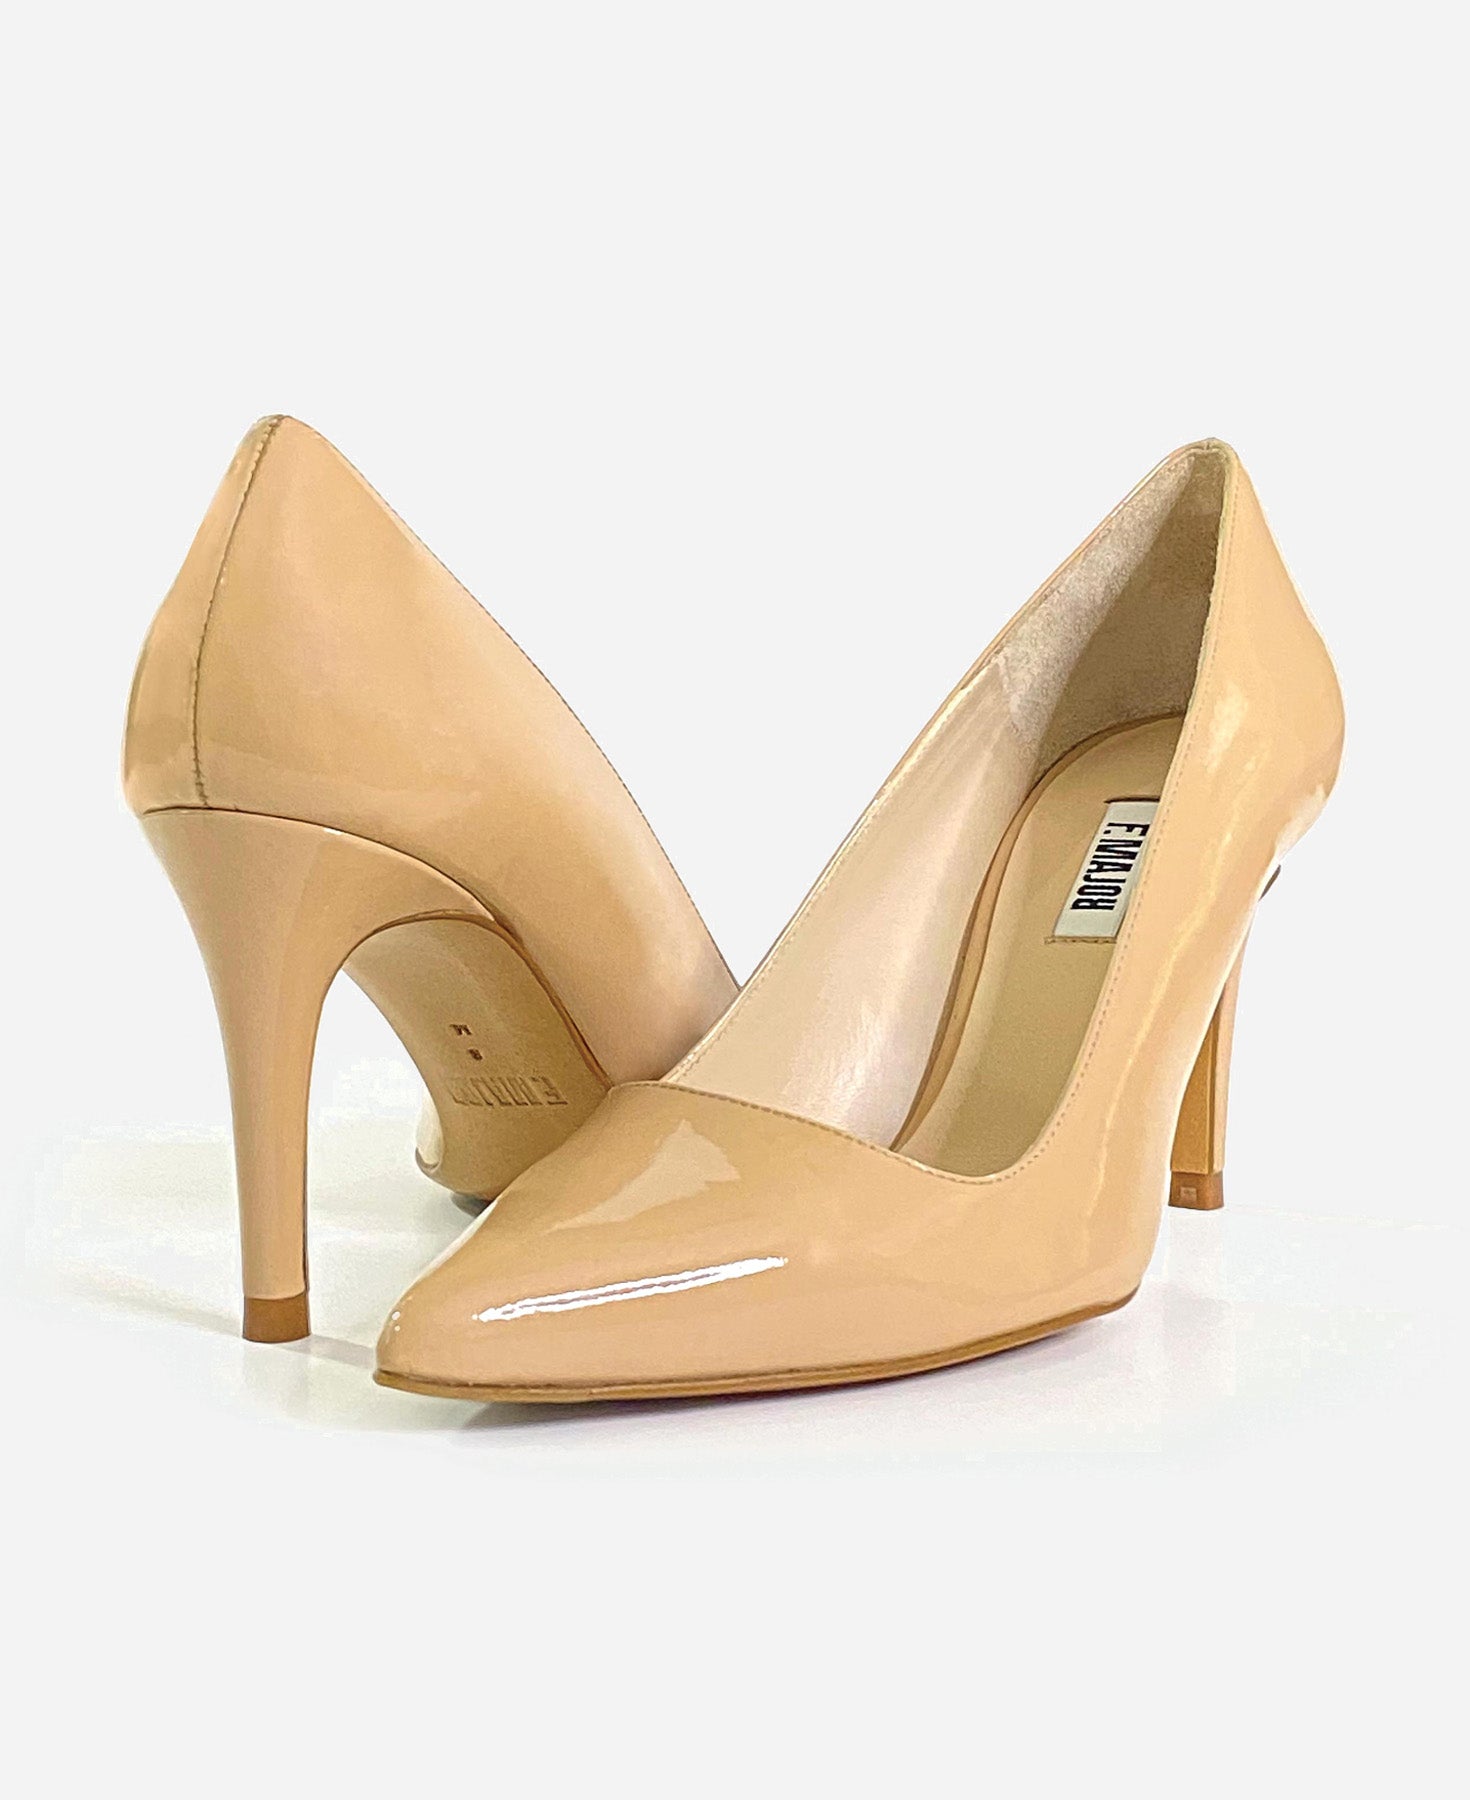 BEIGE PATENT-fmajor comfortable designer heels